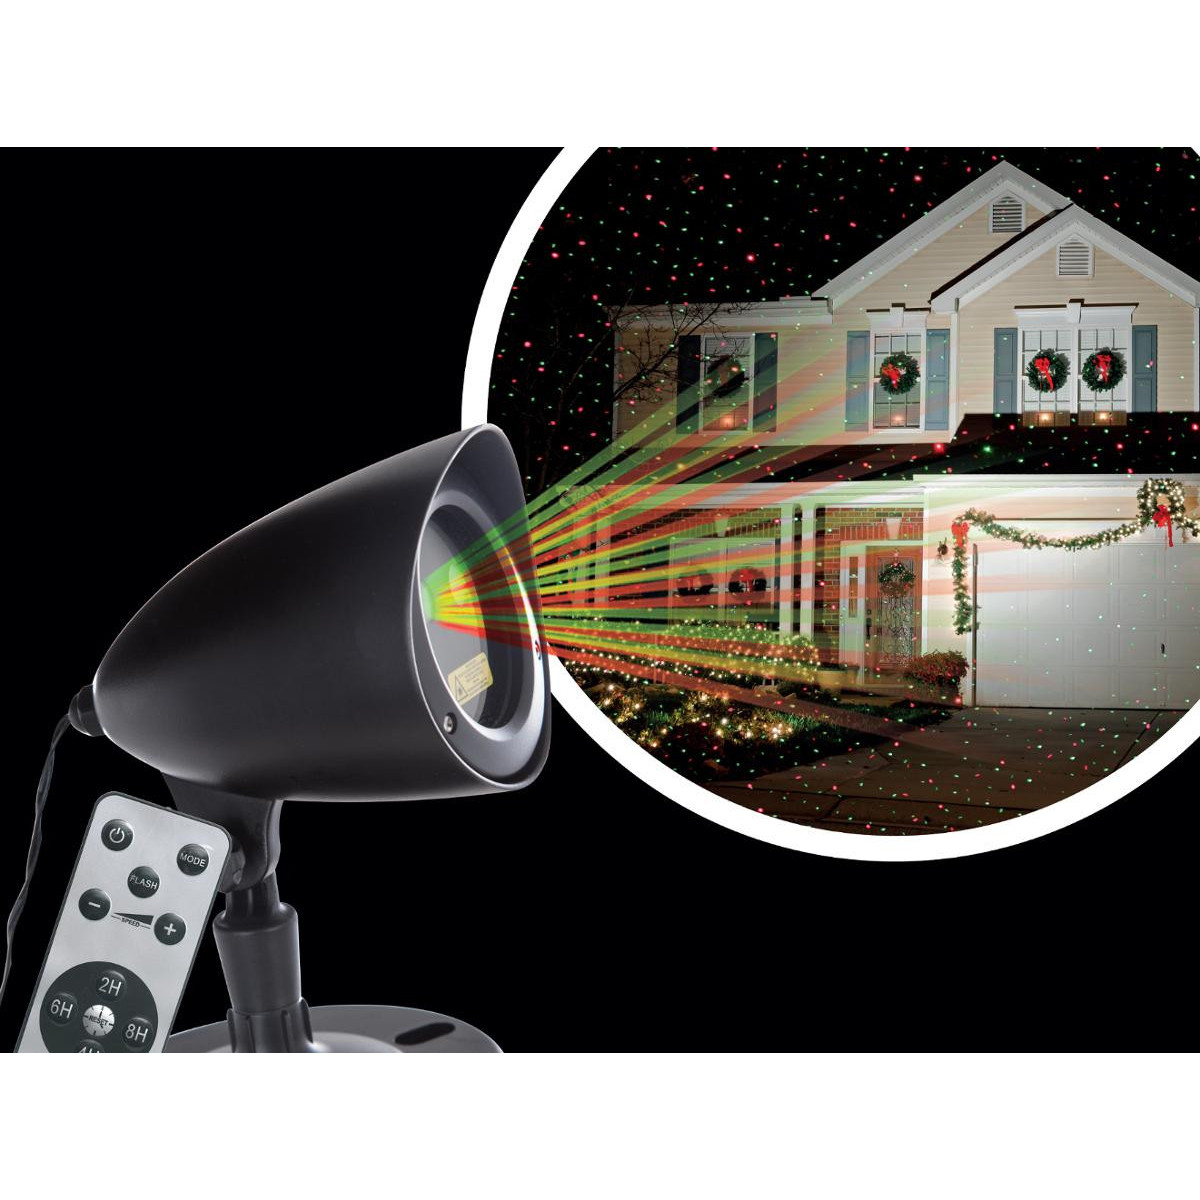 https://www.decomania.fr/254625-product_hd/projecteur-laser-exterieur-laser-de-facade-rouge-et-vert-avec-telecommande.jpg